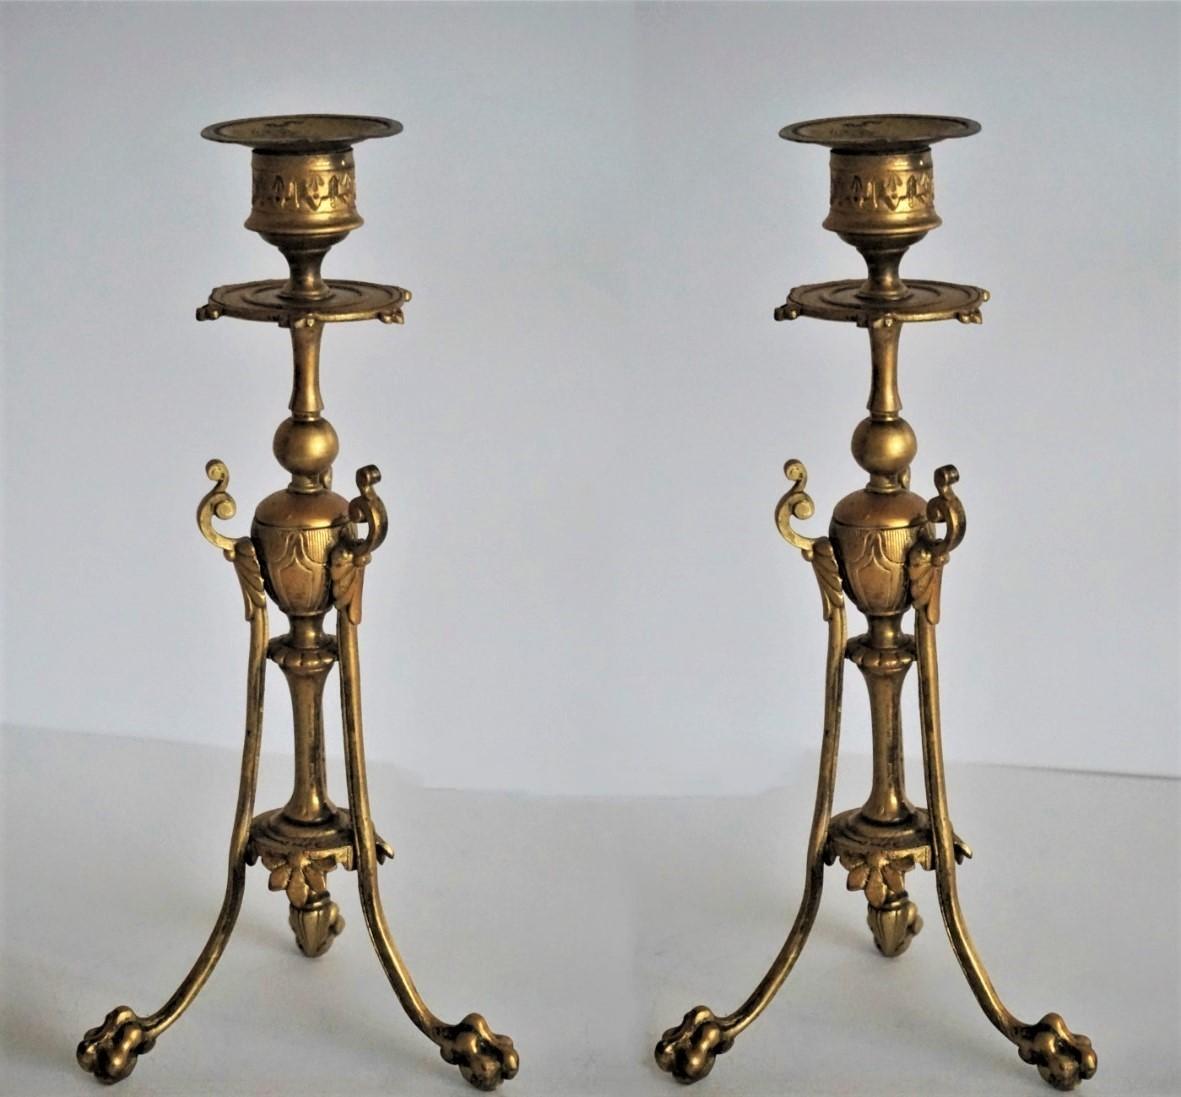 Paire de chandeliers en bronze doré de style Empire reposant sur trois pattes de lion, France, milieu du XIXe siècle.
 